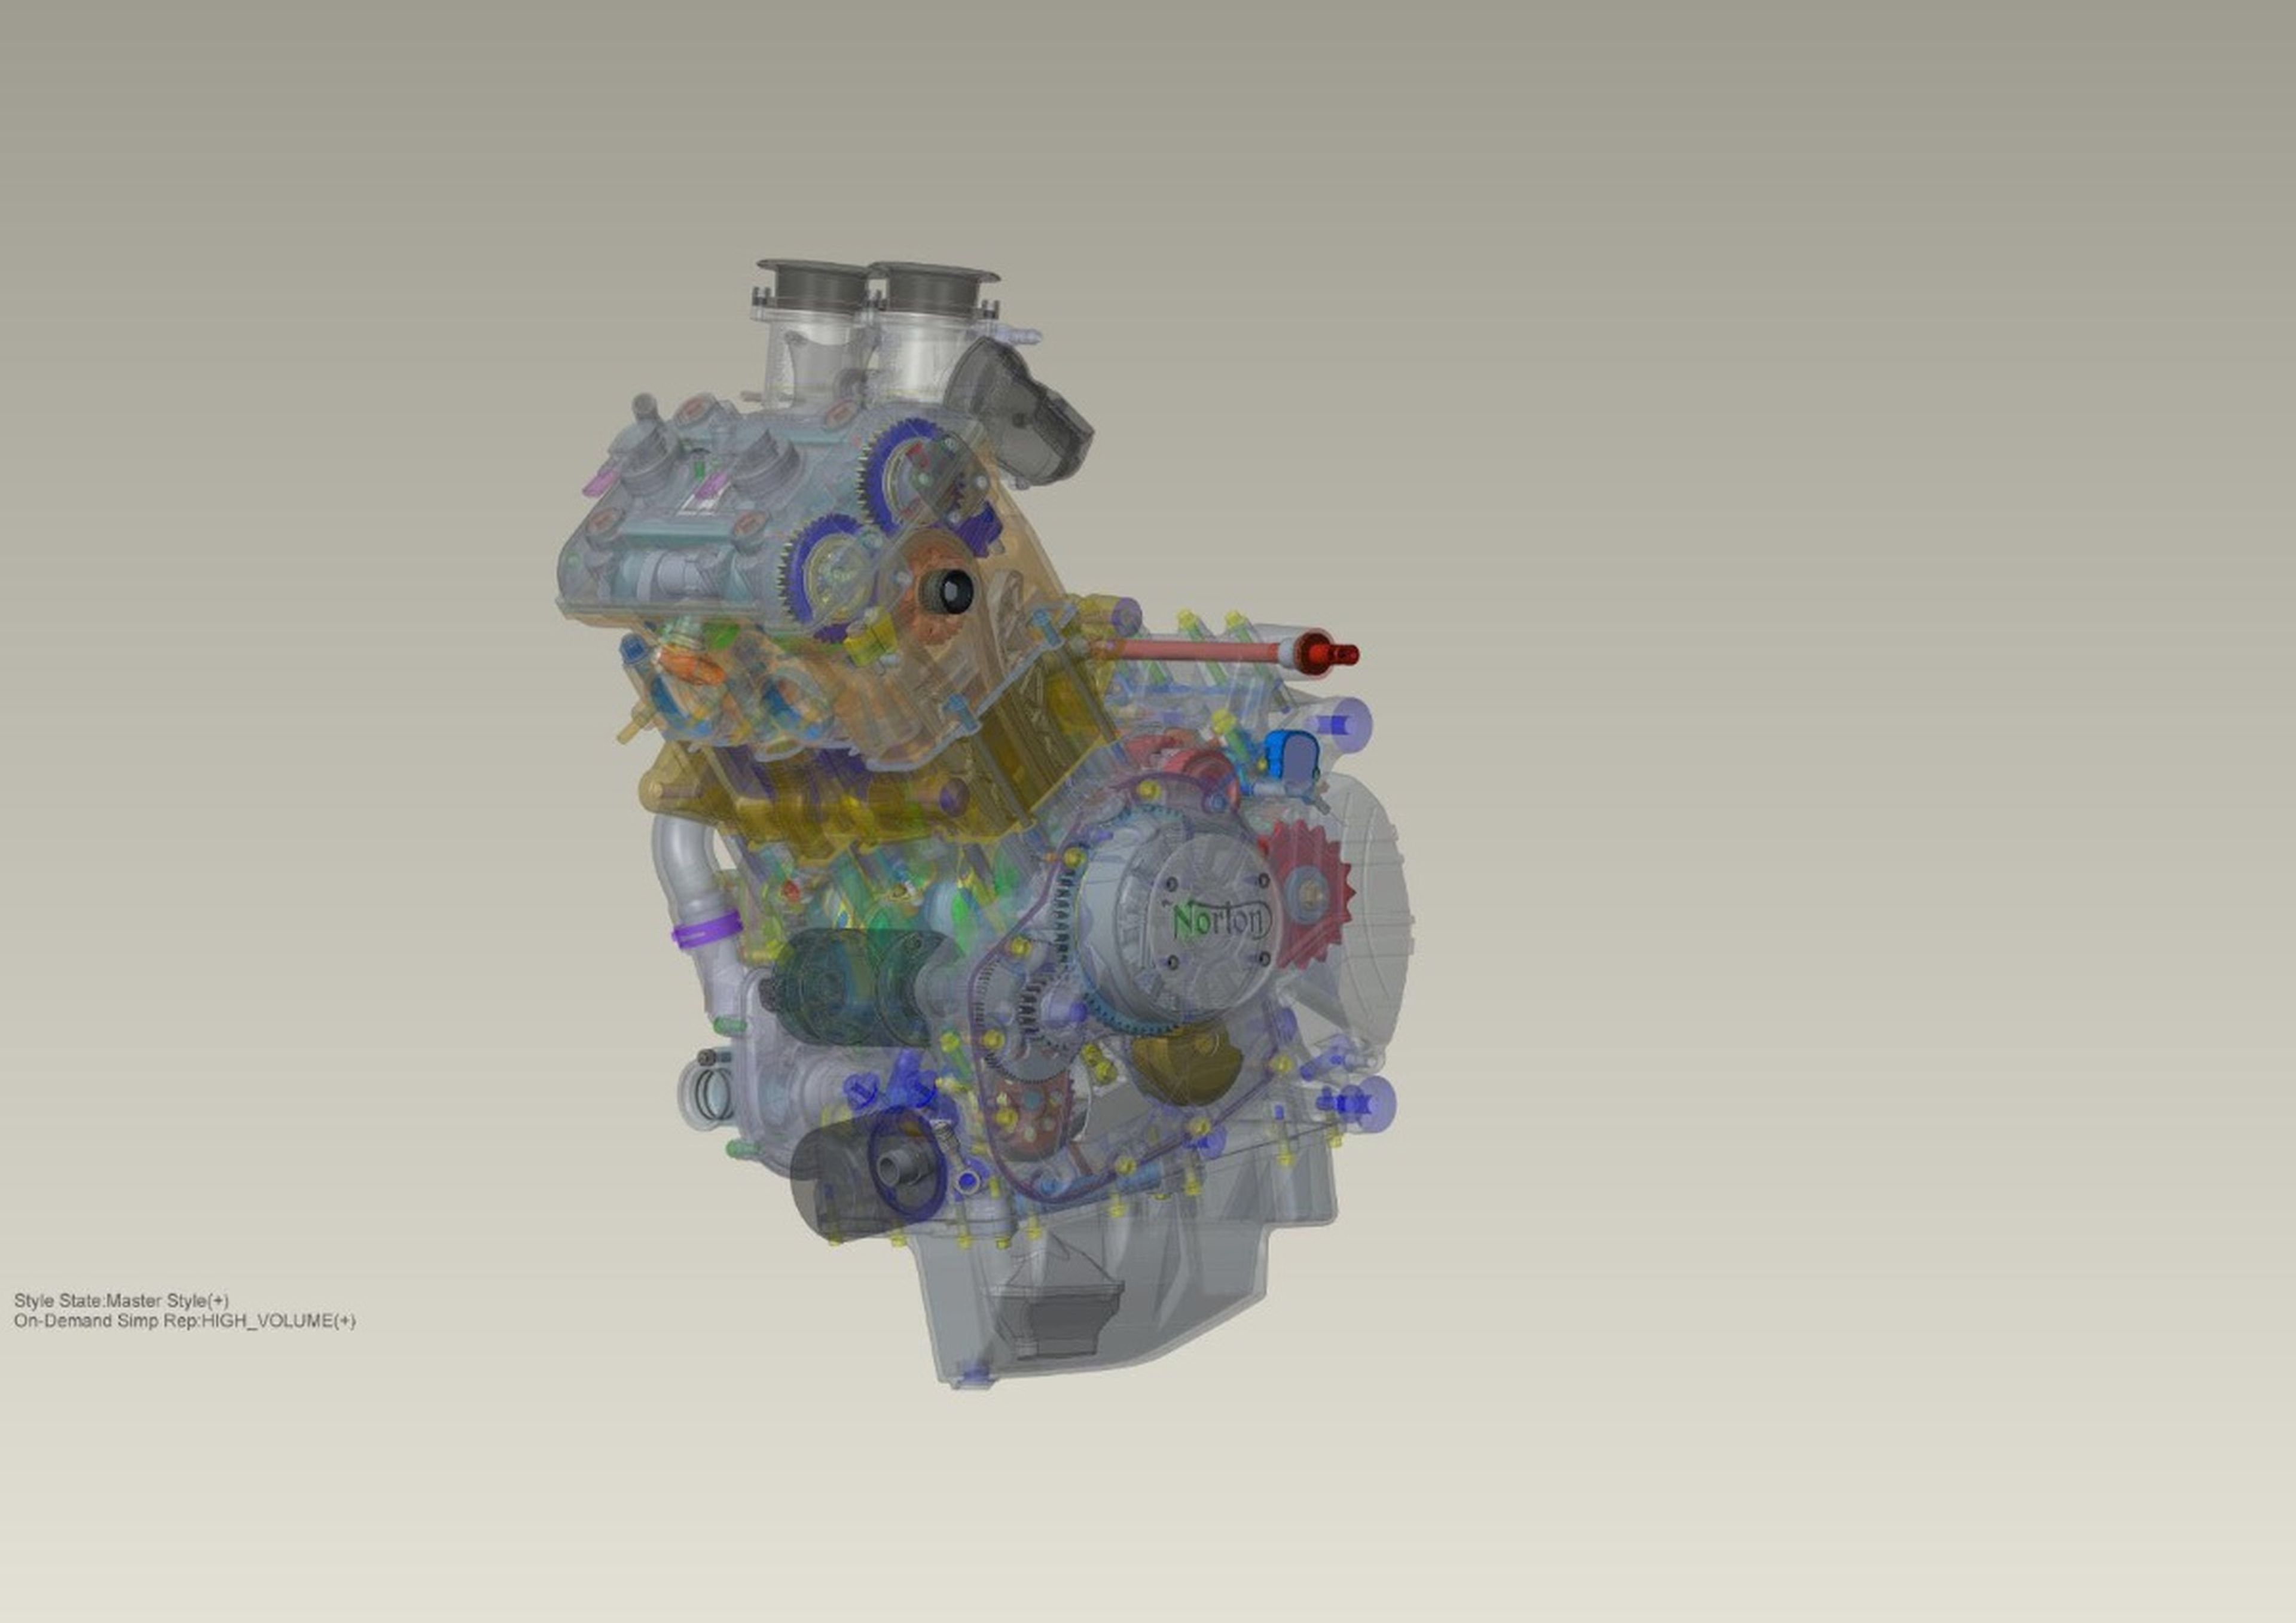 Posible aspecto del motor sobrealimentado bicilíndrico de Norton